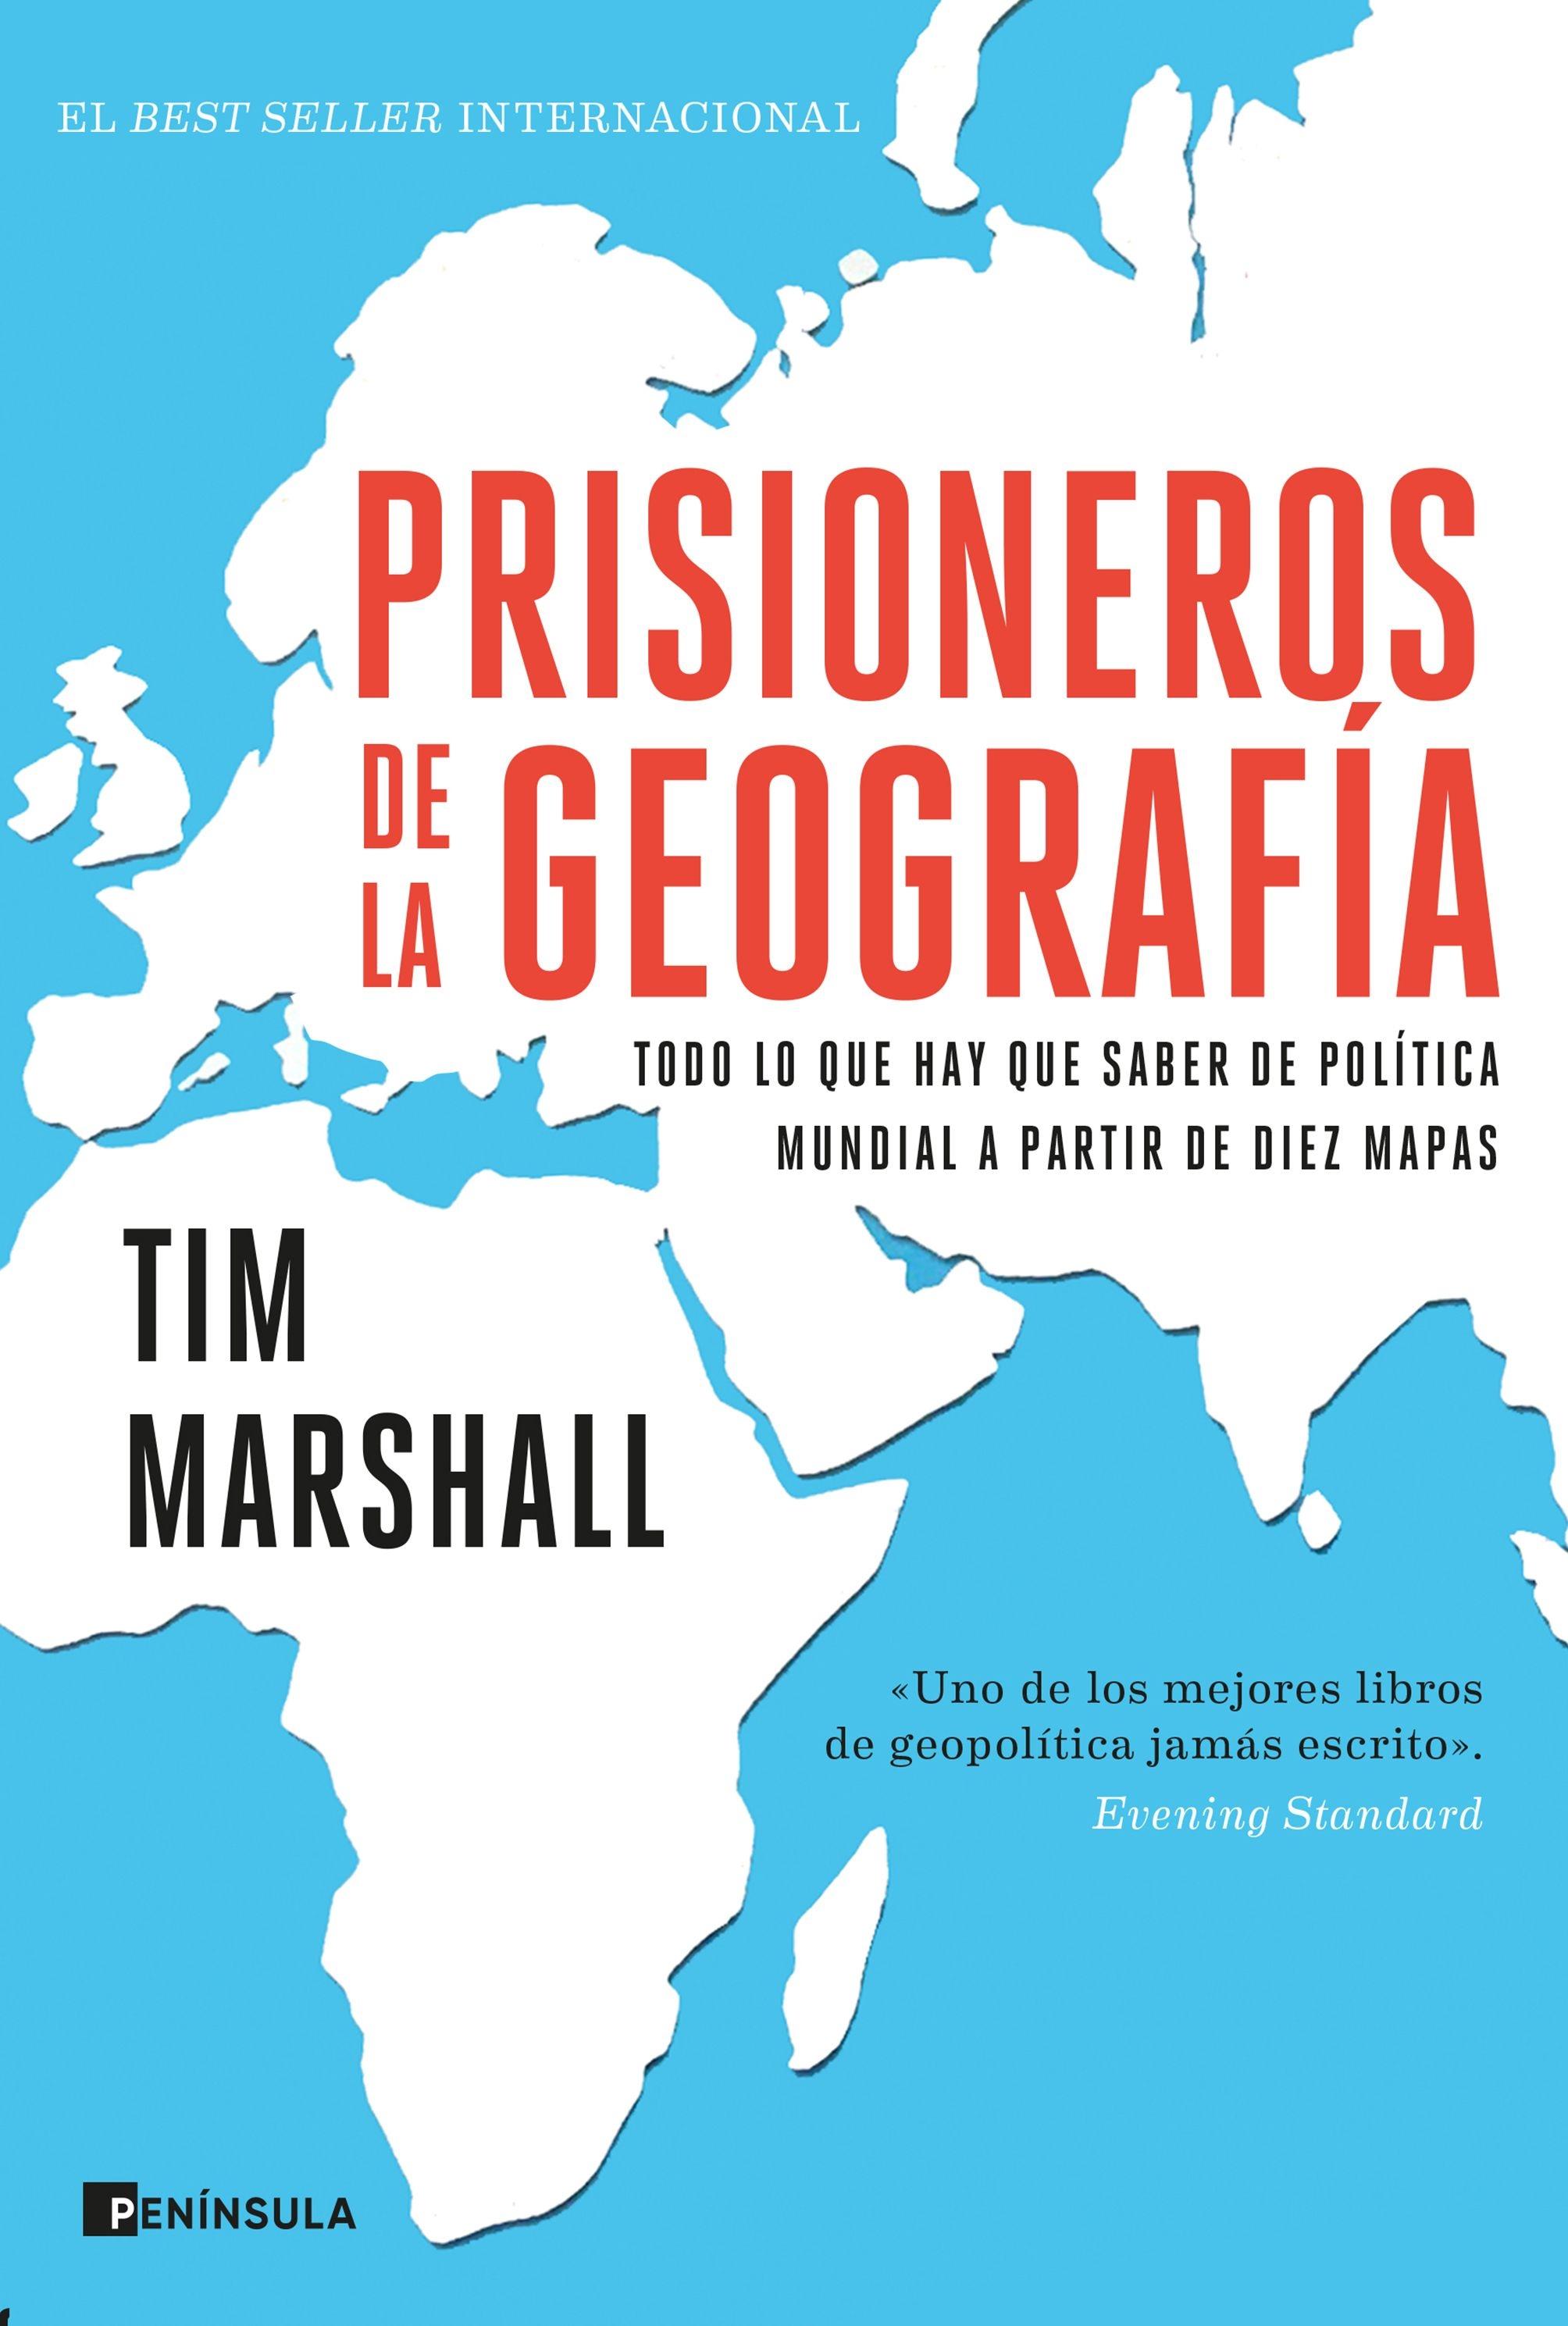 Prisioneros de la geografía "Todo lo que hay que saber de política mundial a partir de diez mapas"